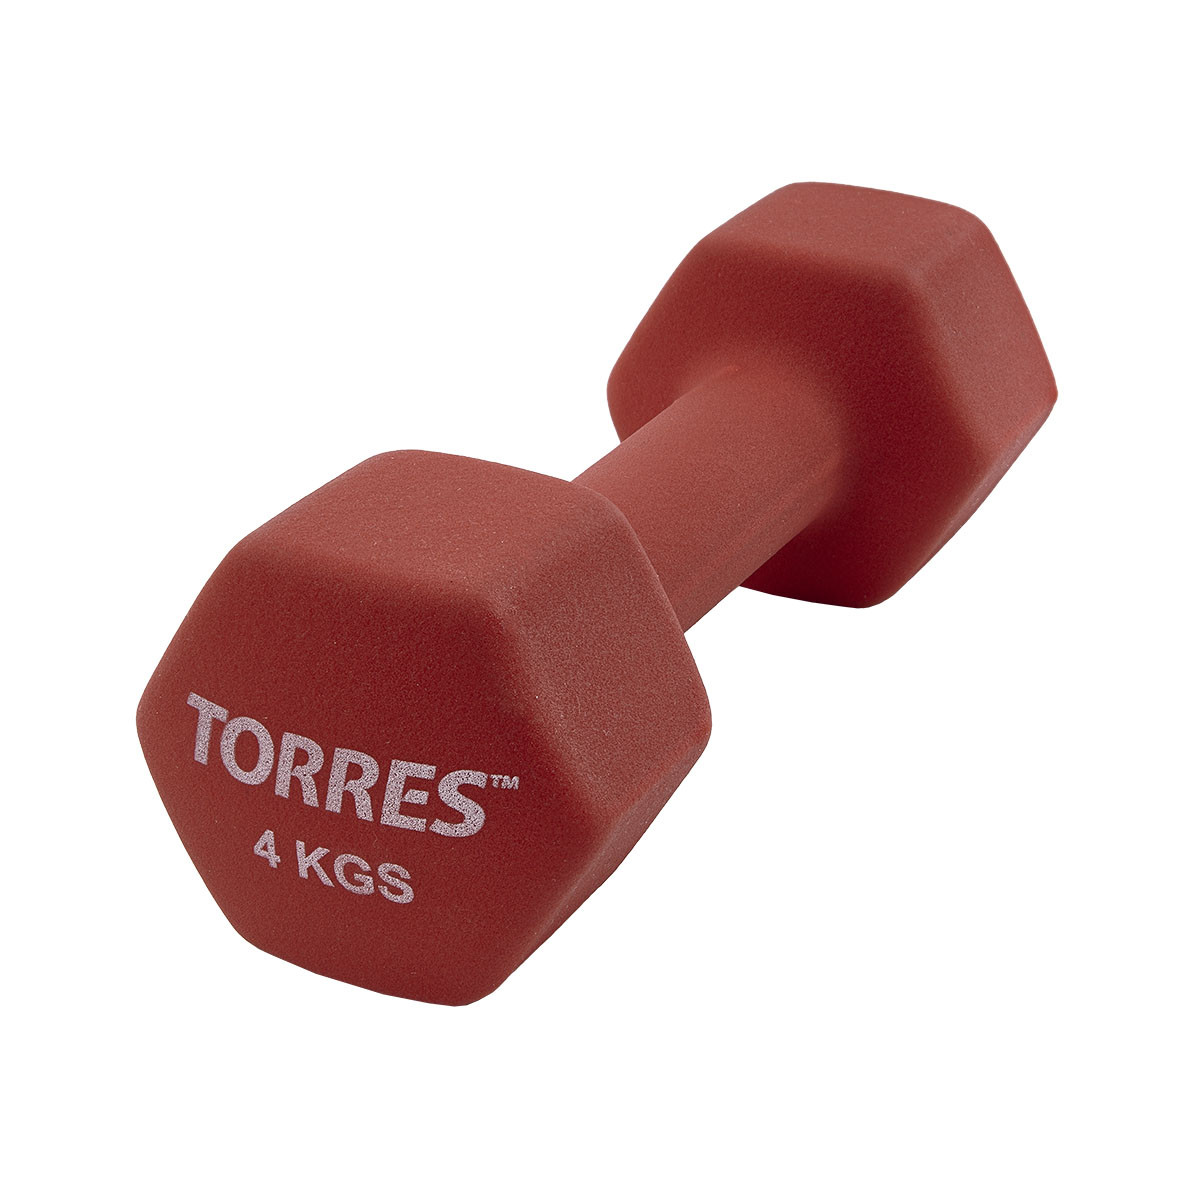 Гантель Torres 4 кг PL55014 1200_1200